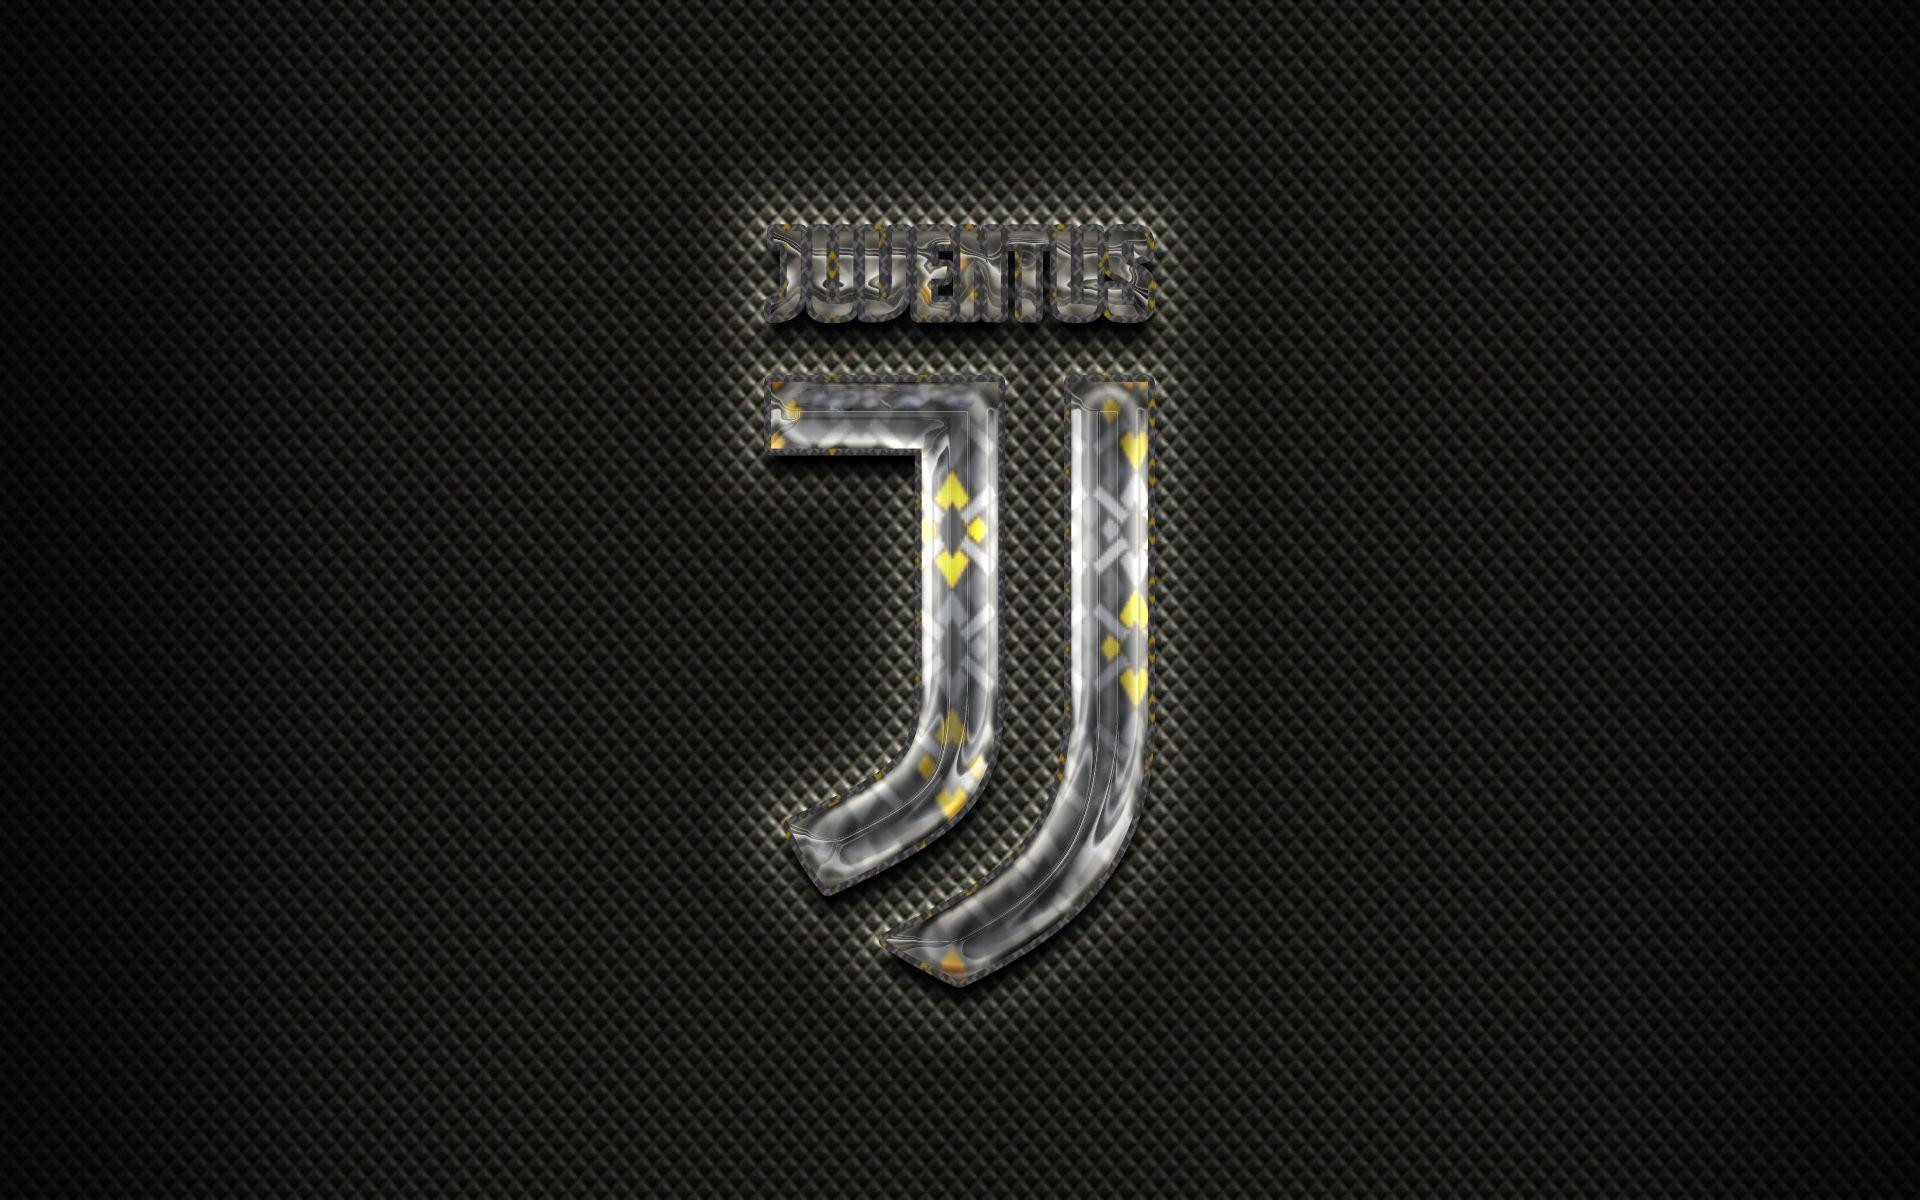 Juventus Wallpapers Top Free Juventus Backgrounds